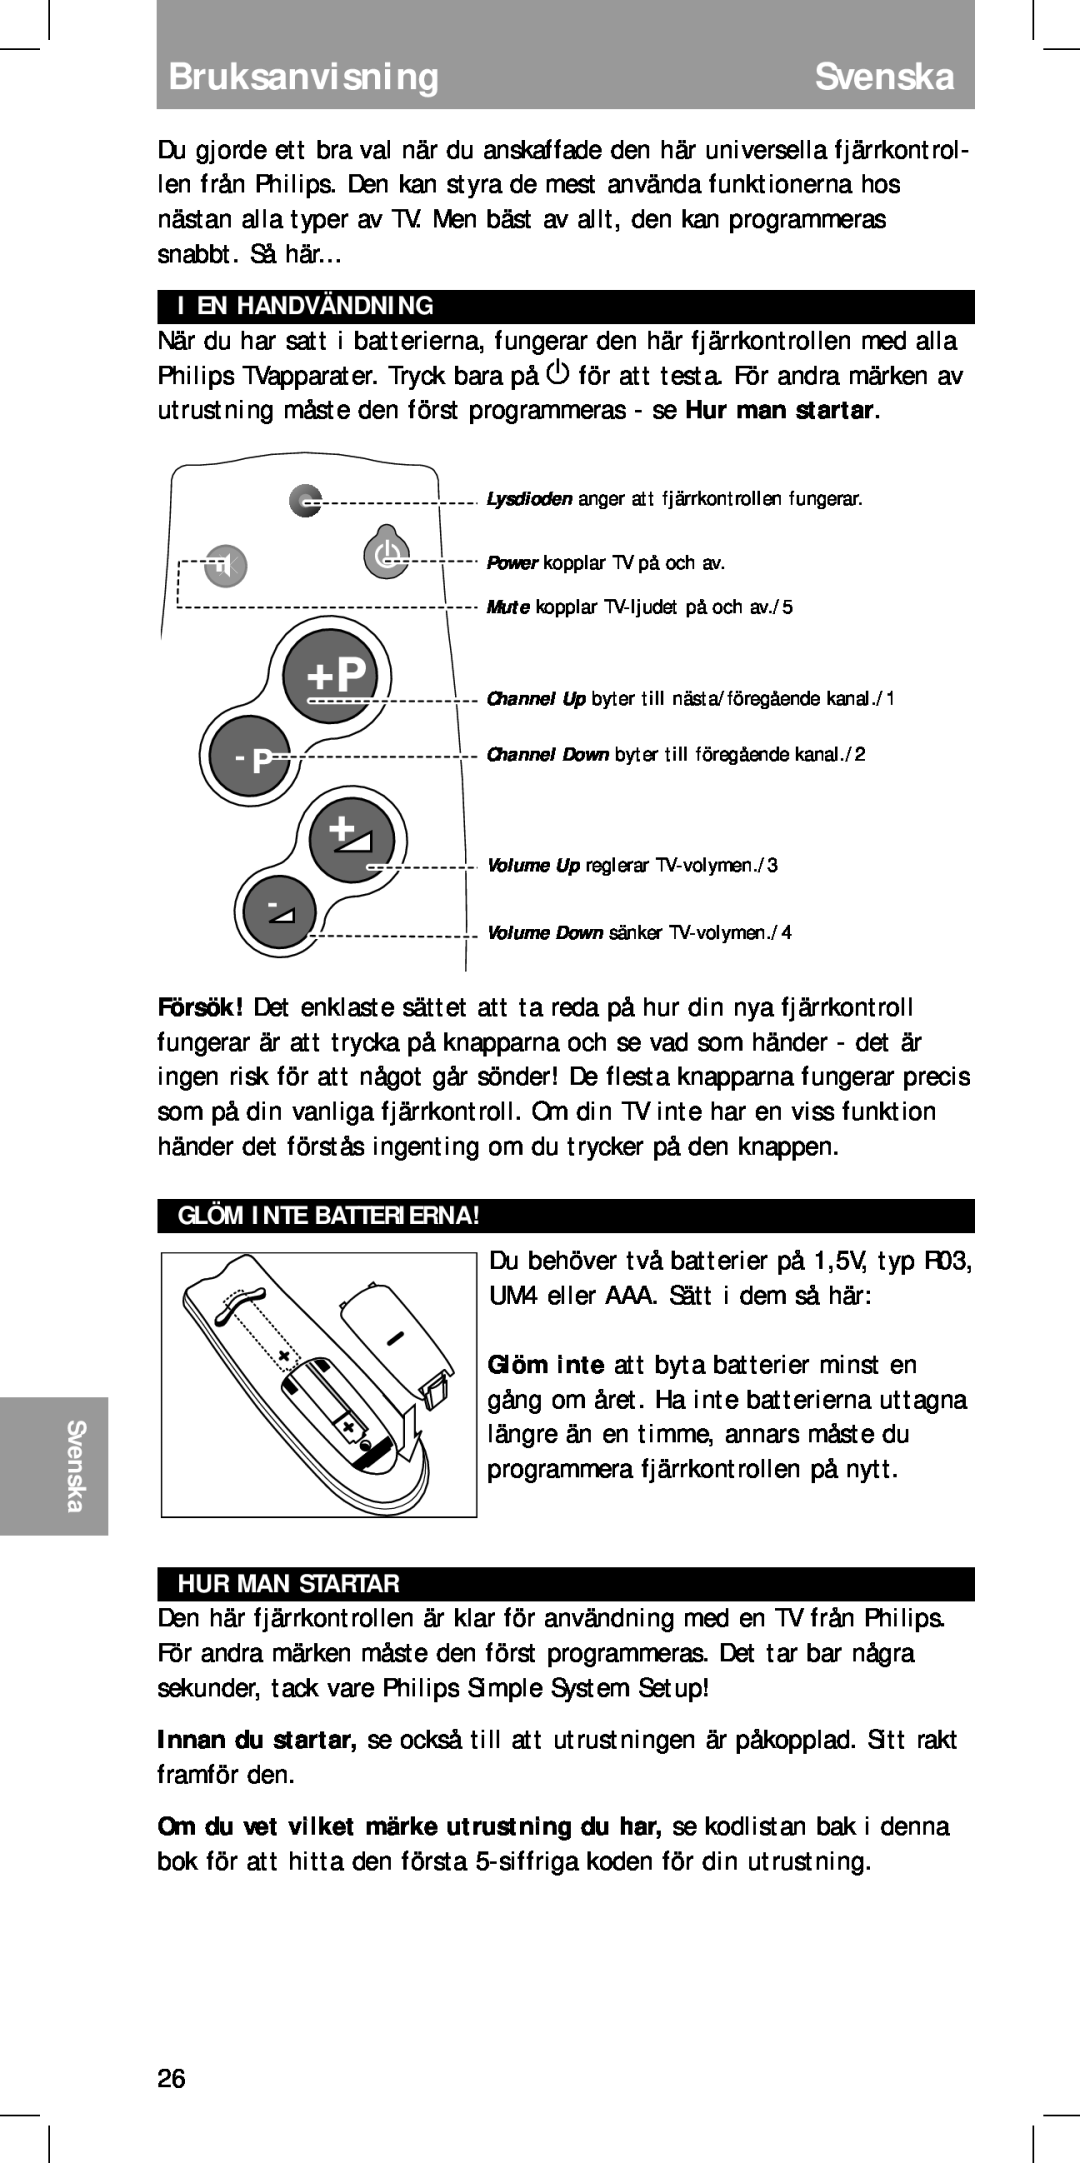 Philips MC-110 manual BruksanvisningSvenska, I En Handvändning, Glöm Inte Batterierna, Hur Man Startar 